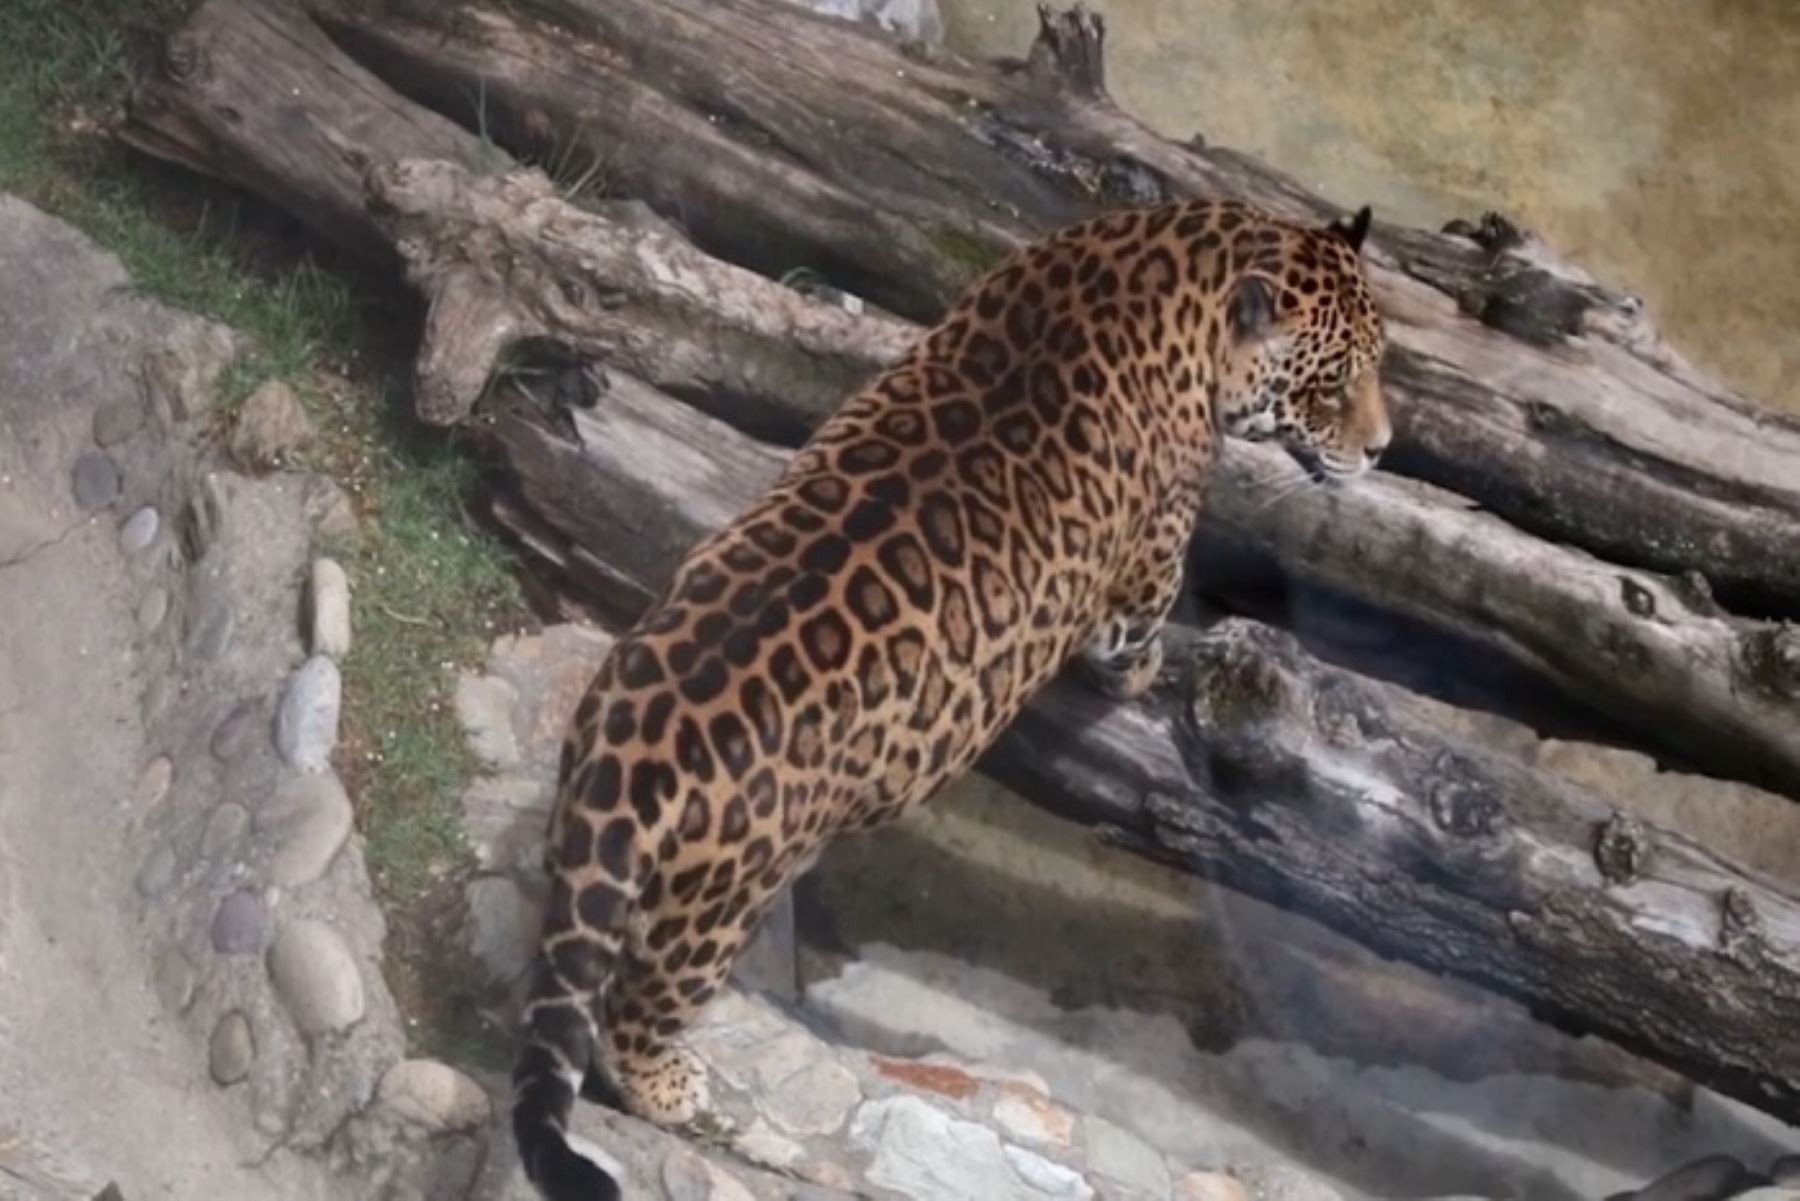 Los otorongos, también conocidos como jaguares de agua, están en peligro debido a la degradación de su hábitat y la caza furtiva.